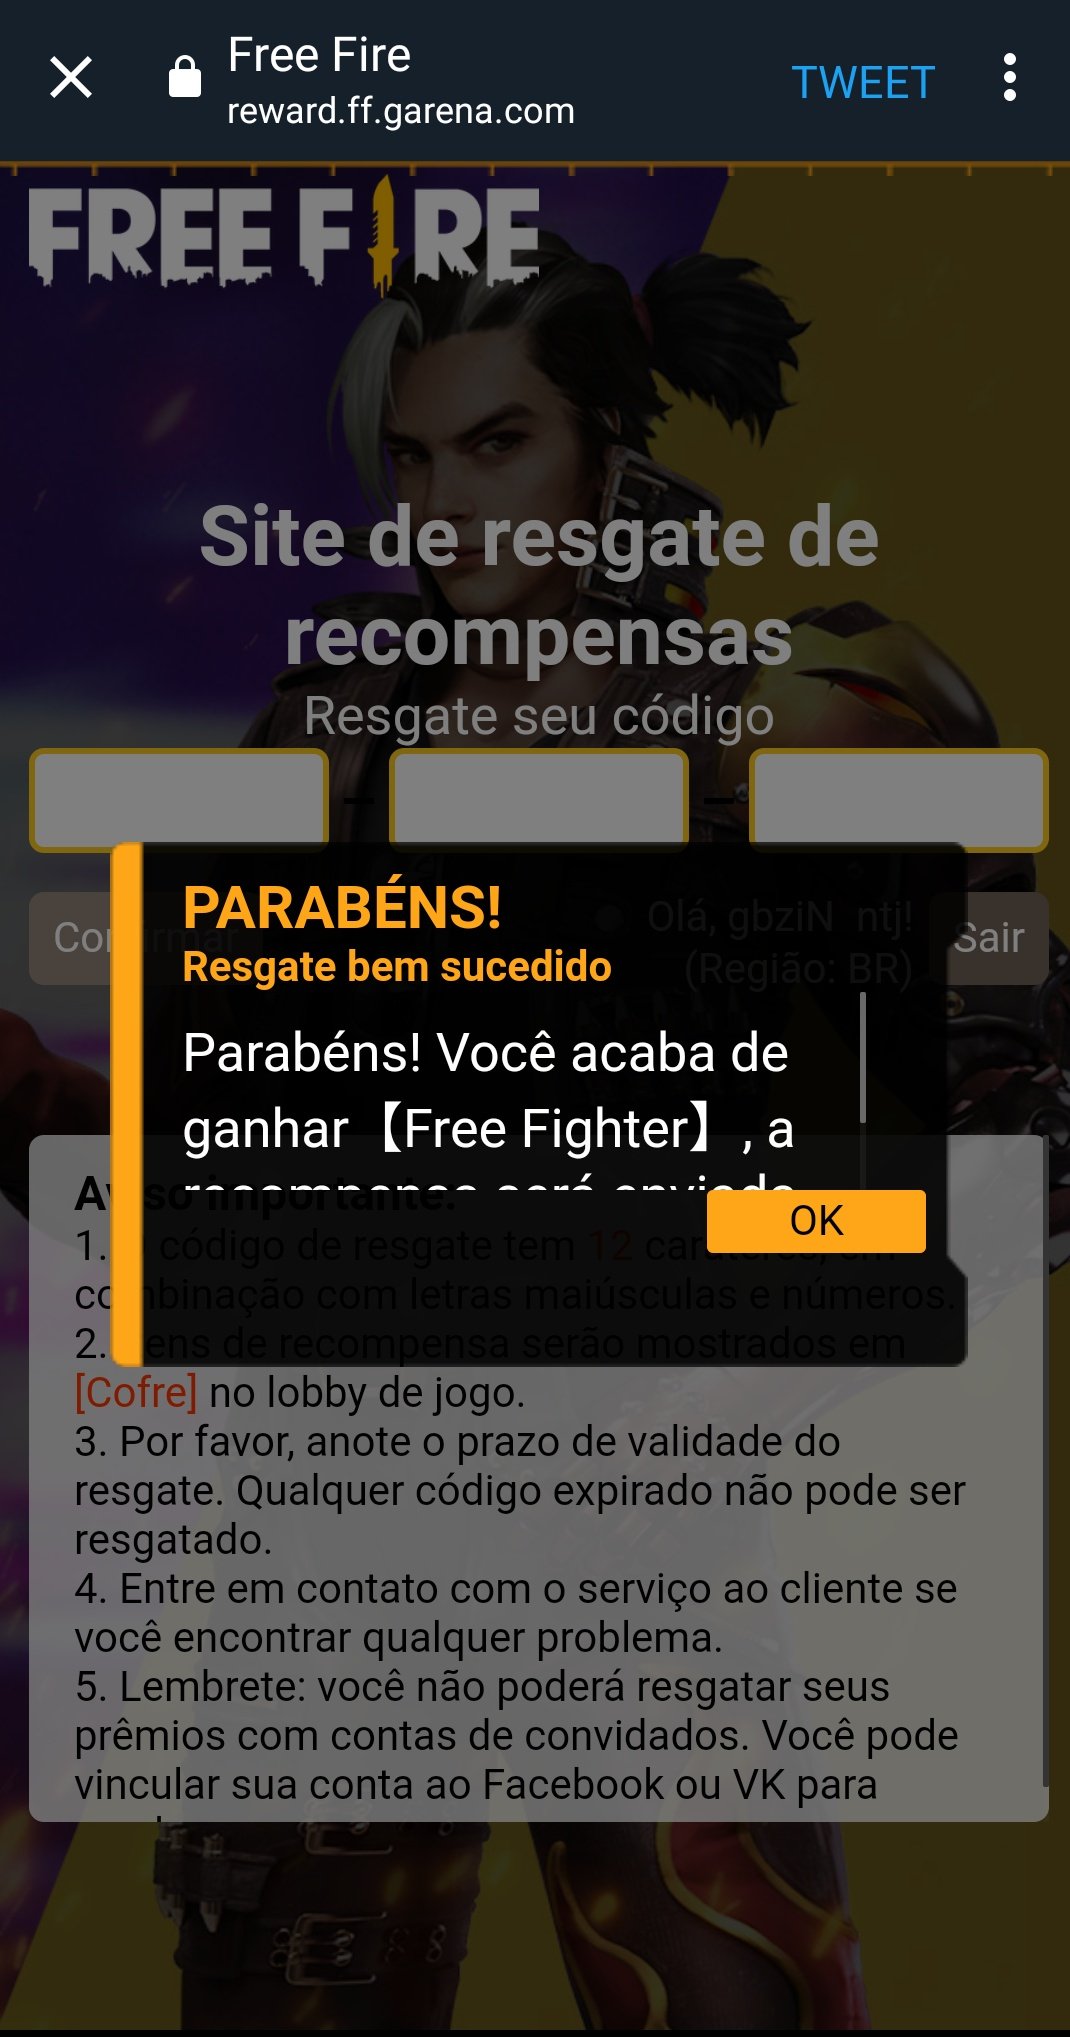 Garena Free Fire Brasil on X: É fácil vincular sua conta para não